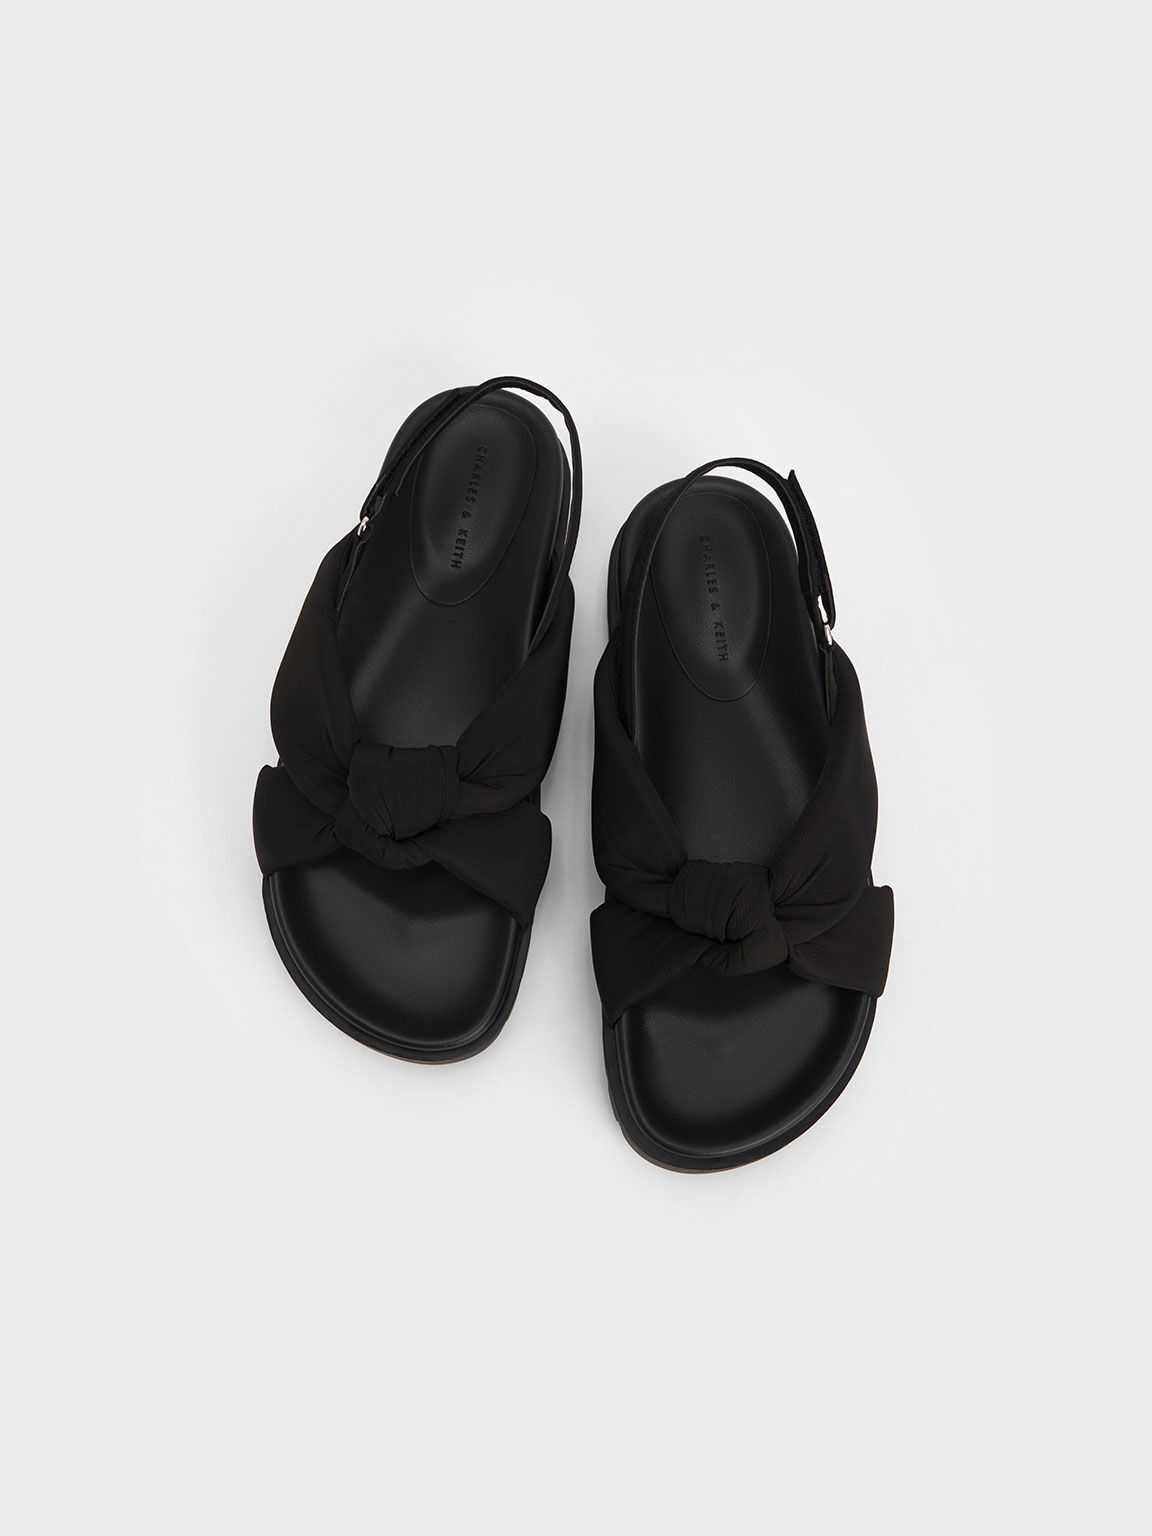 Nylon Knotted Flatform Sandals, Black, hi-res